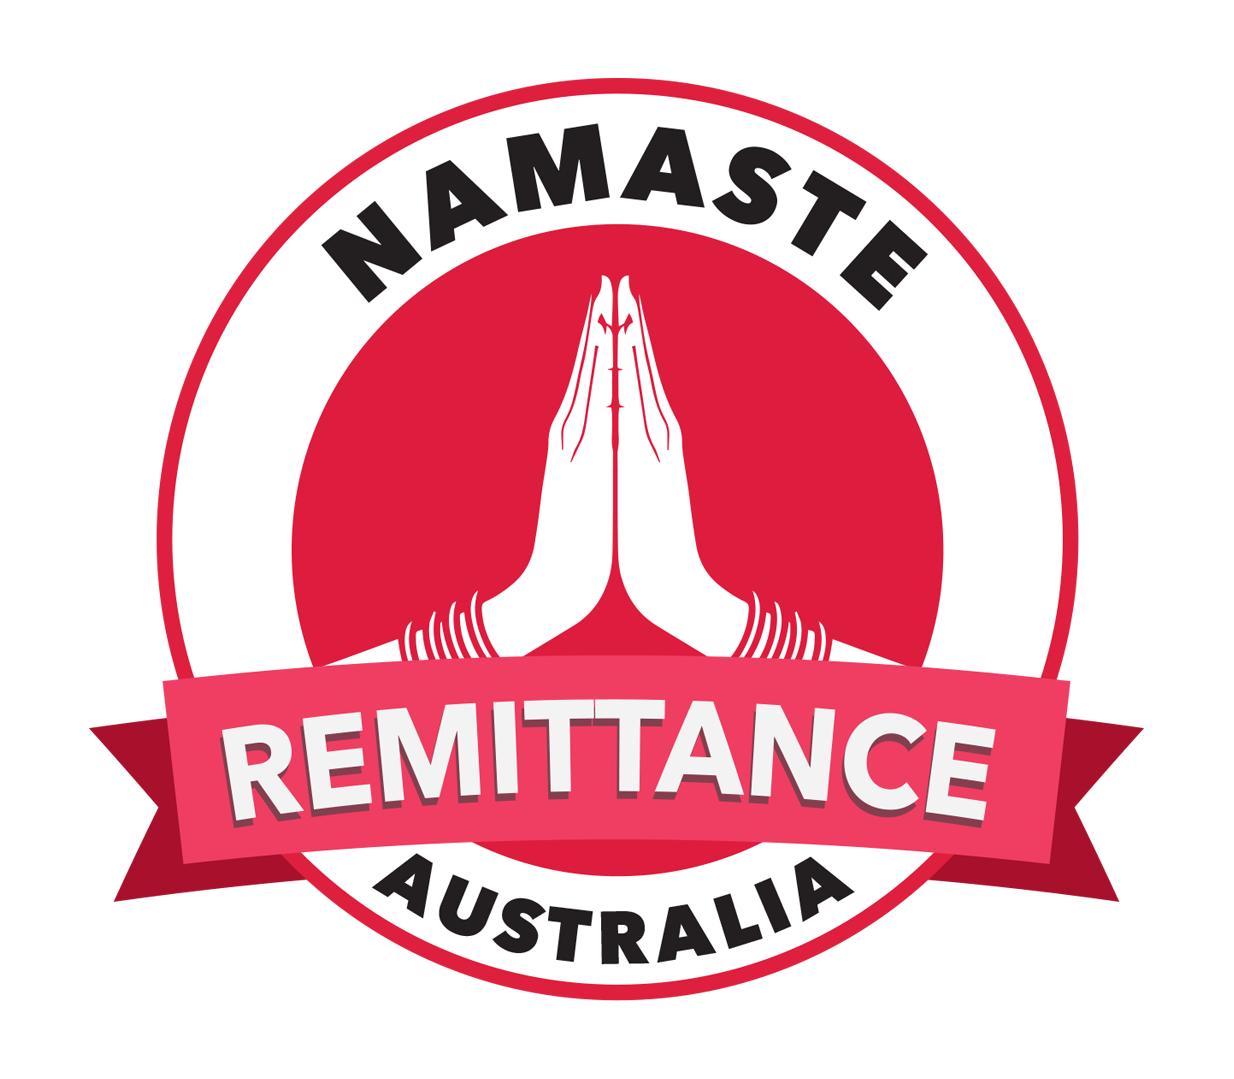 Namaste Remittance